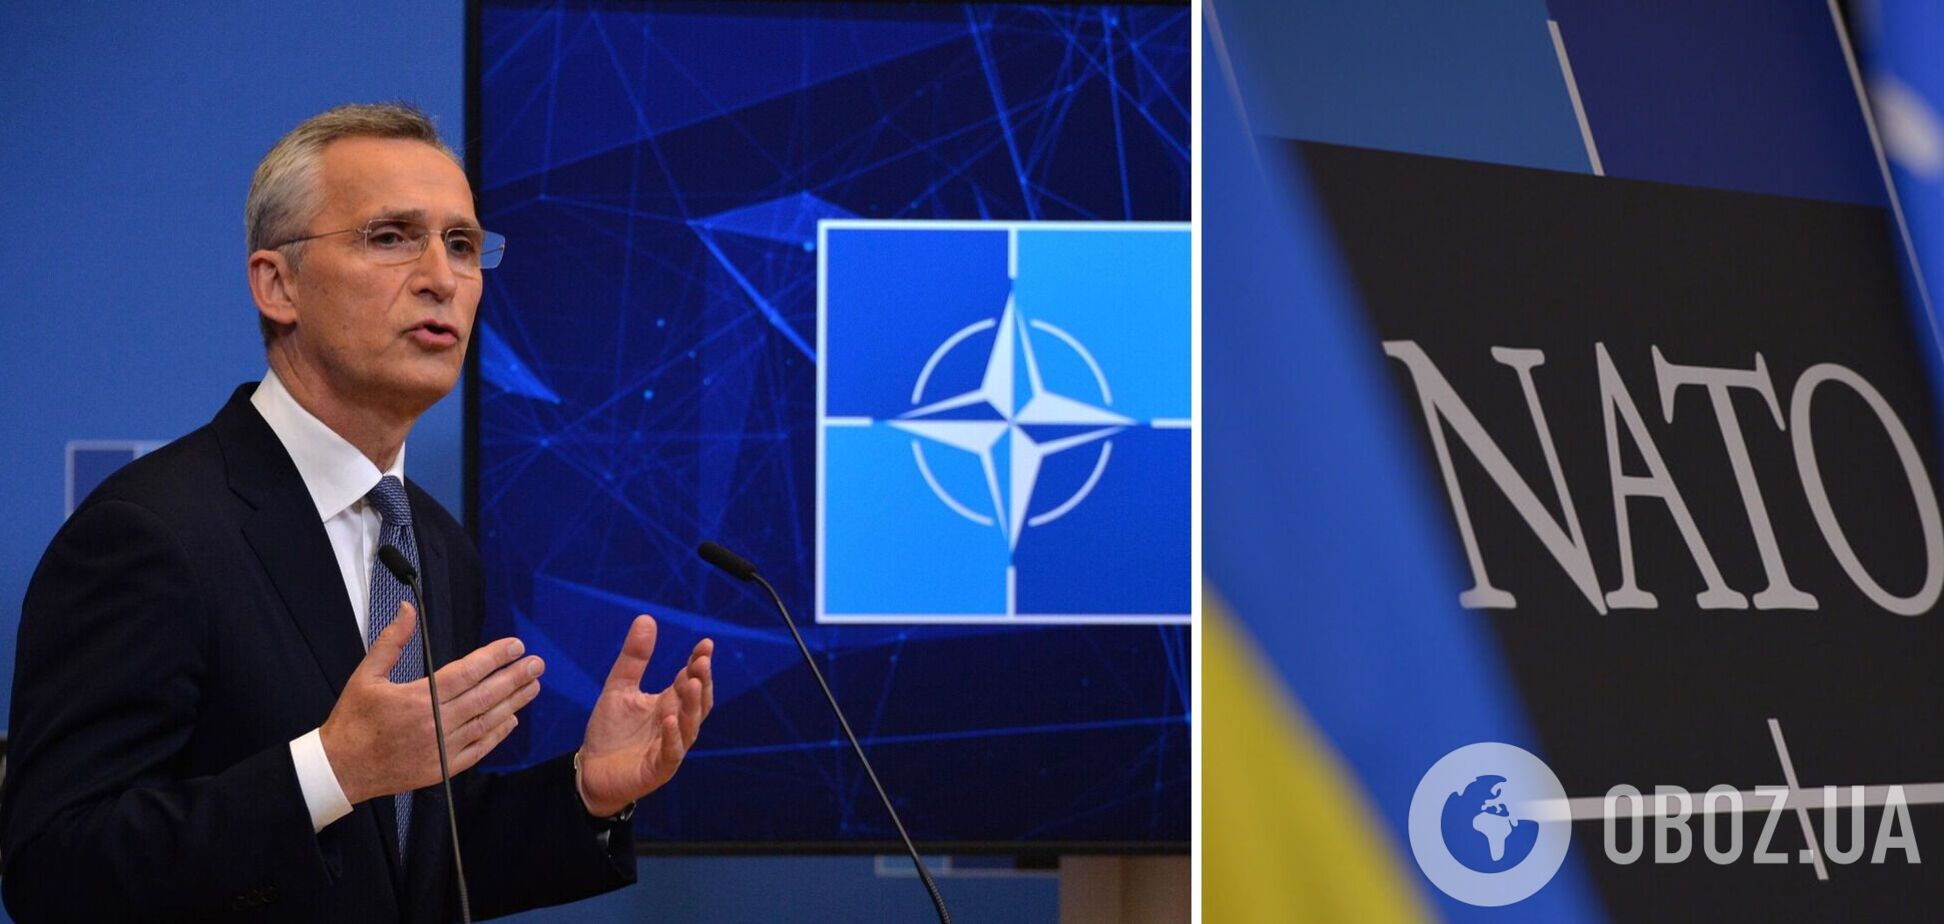 Перемога України на полі бою є умовою для переговорів: Столтенберг заявив, що НАТО буде підтримувати Київ до повного програшу РФ